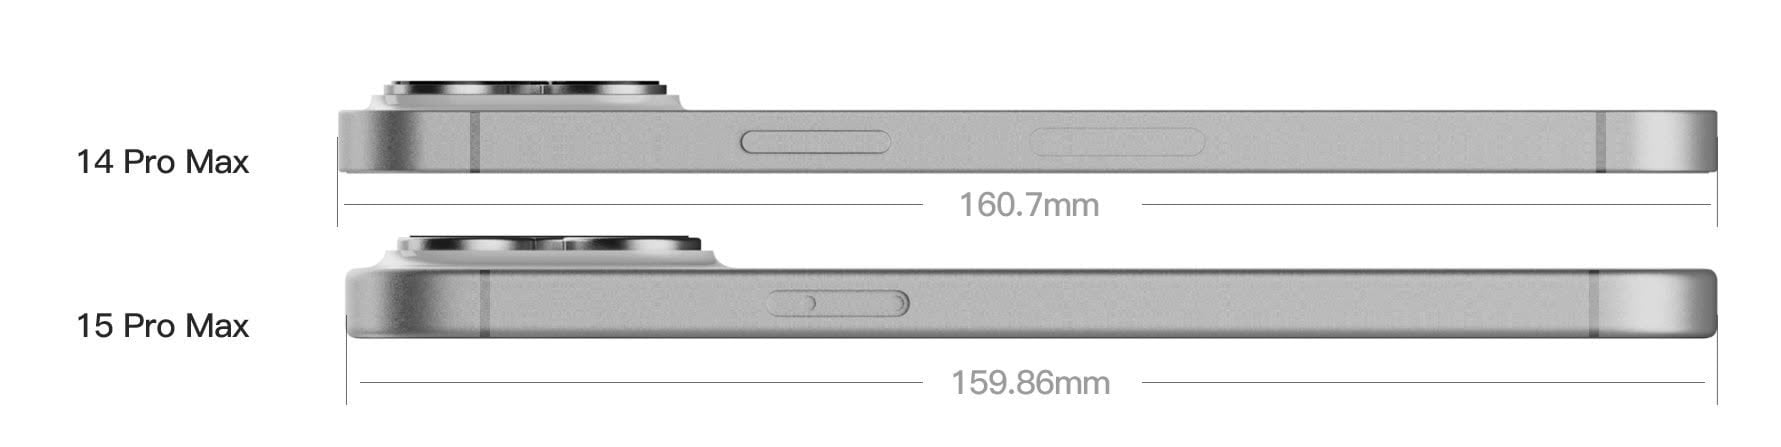 iPhone 15 Pro Max, nel rendering appare con gobba fotocamera più sottile